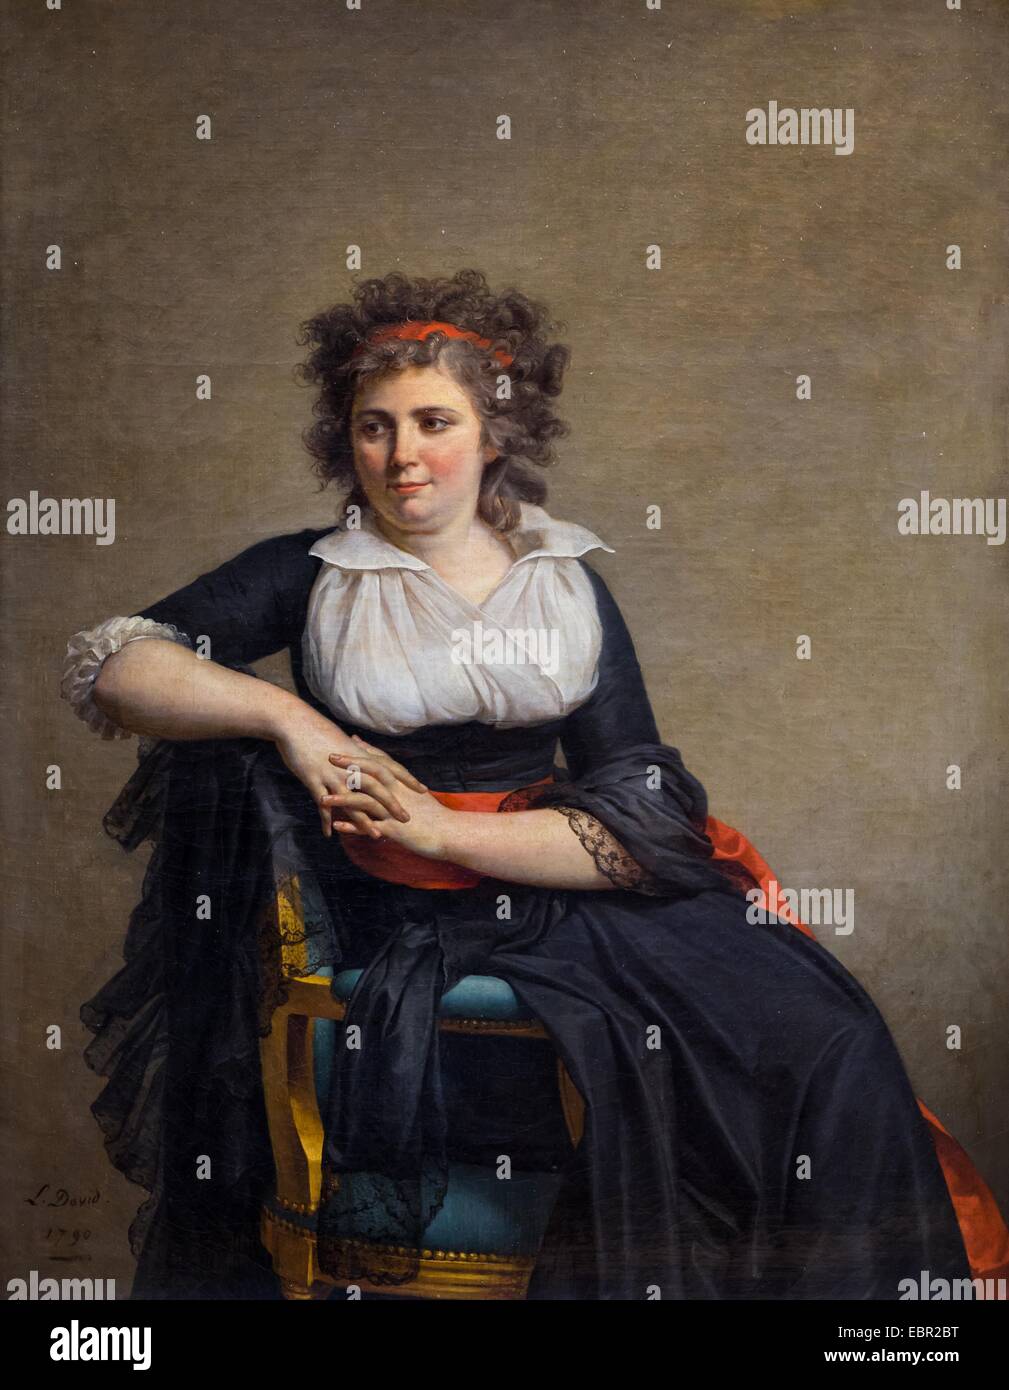 ActiveMuseum_0002292.jpg / die Marquise von Orvilliers, Jeanne-Robertin Rilliet, 1790 - Jacques-Louis David geboren 10.02.2013 - / 18. Jahrhundert Sammlung / aktive Museum Stockfoto